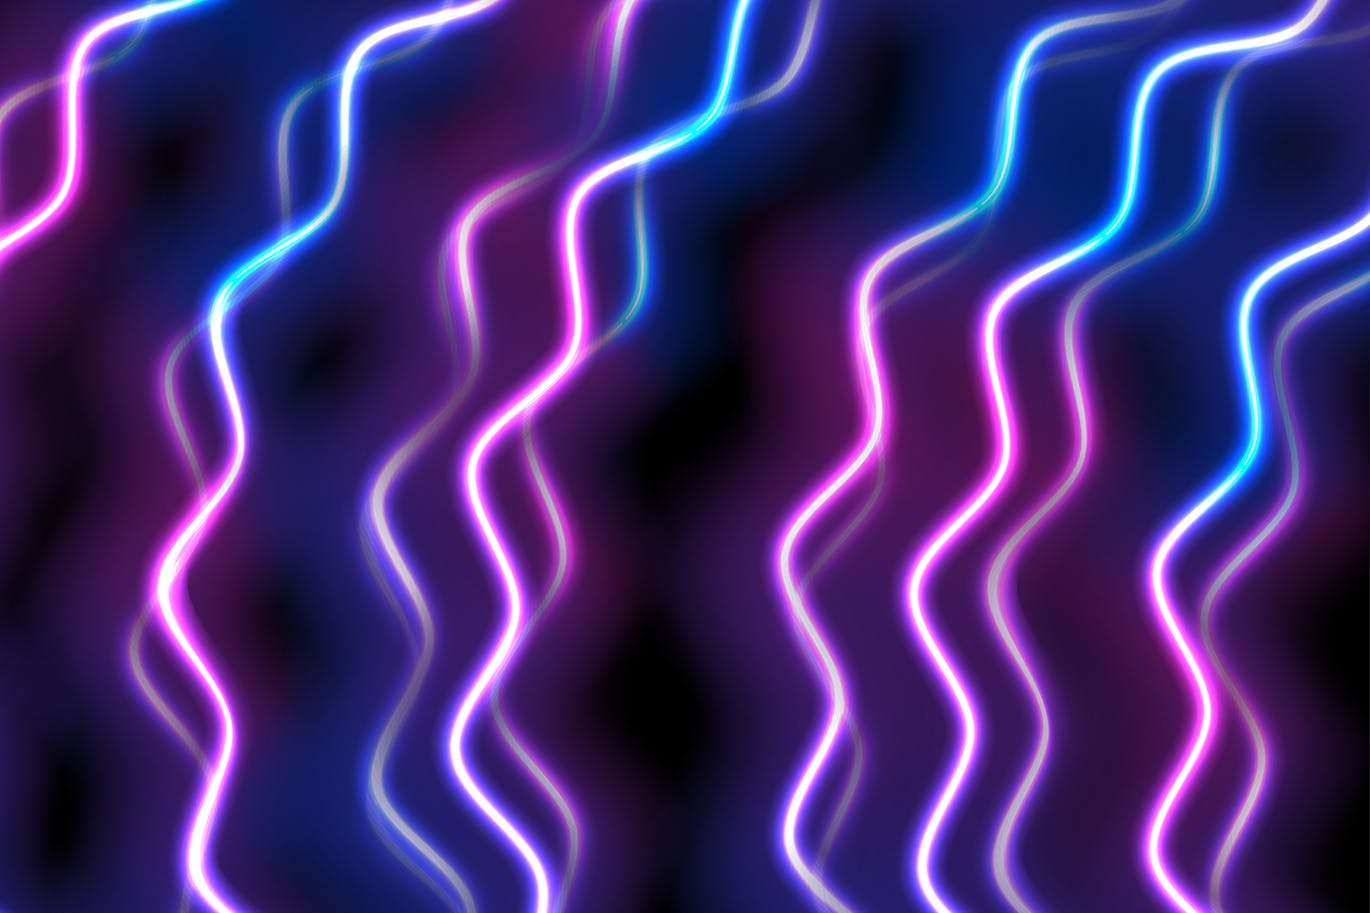 蓝紫色霓虹波高清抽象背景图片素材 Blue purple neon waves abstract background设计素材模板